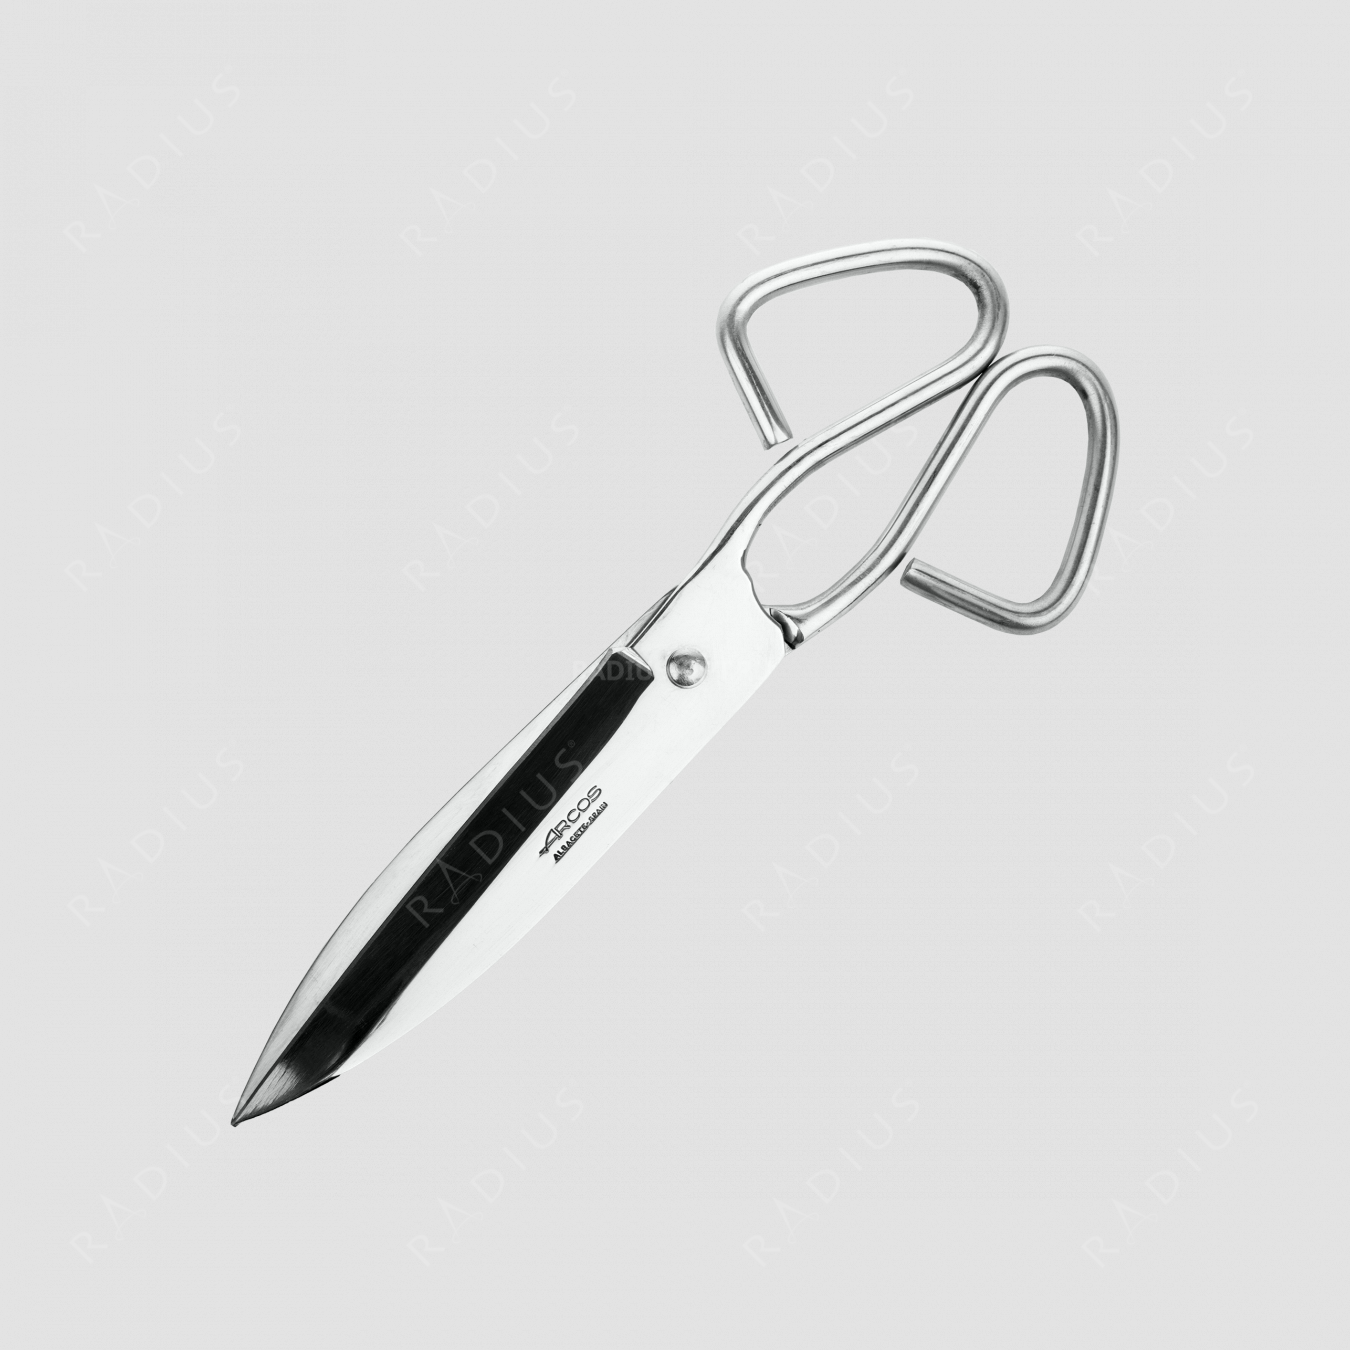 Ножницы кухонные 20 см, серия Scissors, ARCOS, Испания